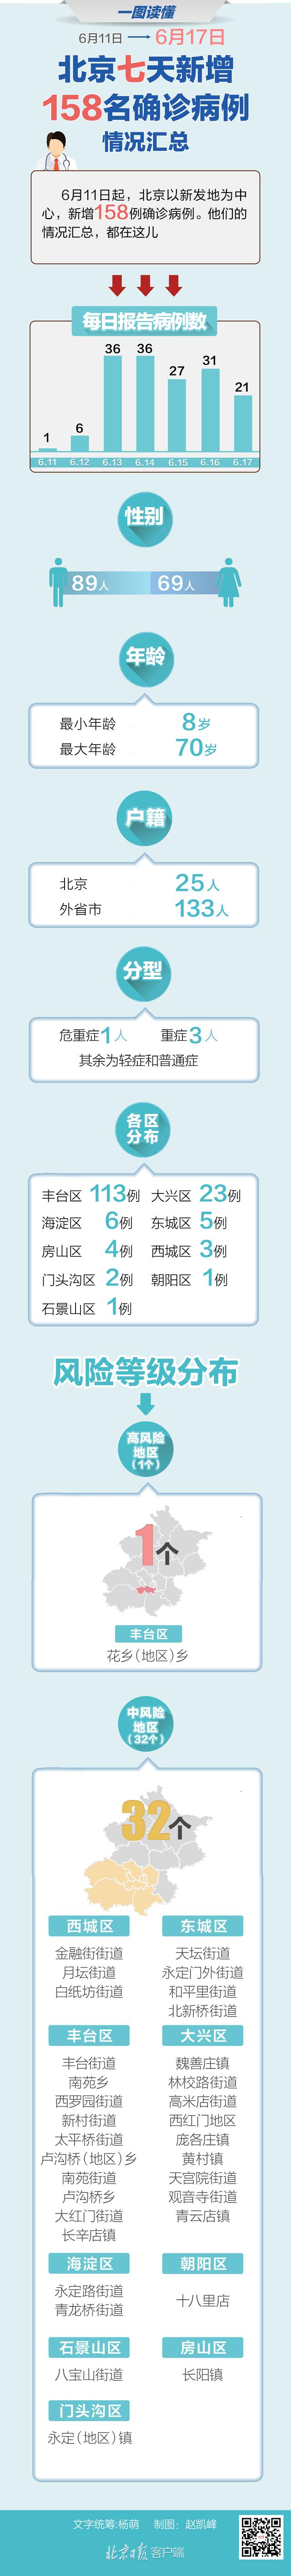 全国5省出现北京确诊关联病例北京累积183例